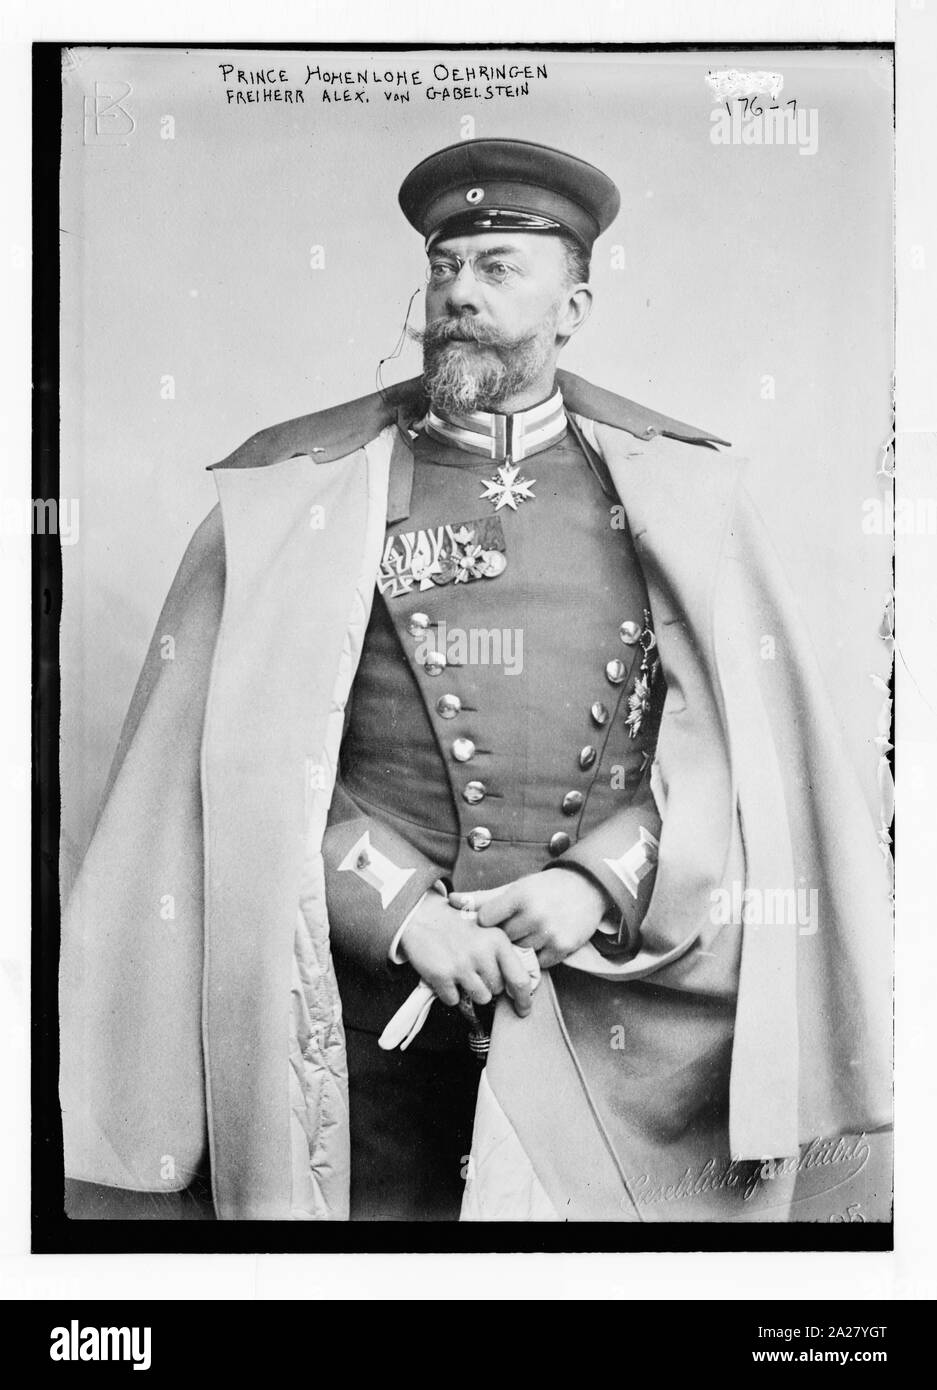 Prince Hohenlohe Oehringen, Freiherr Alex. Von Gabelstein, standing, in uniform, Gestulich geschurt. / Gesetulich Stock Photo